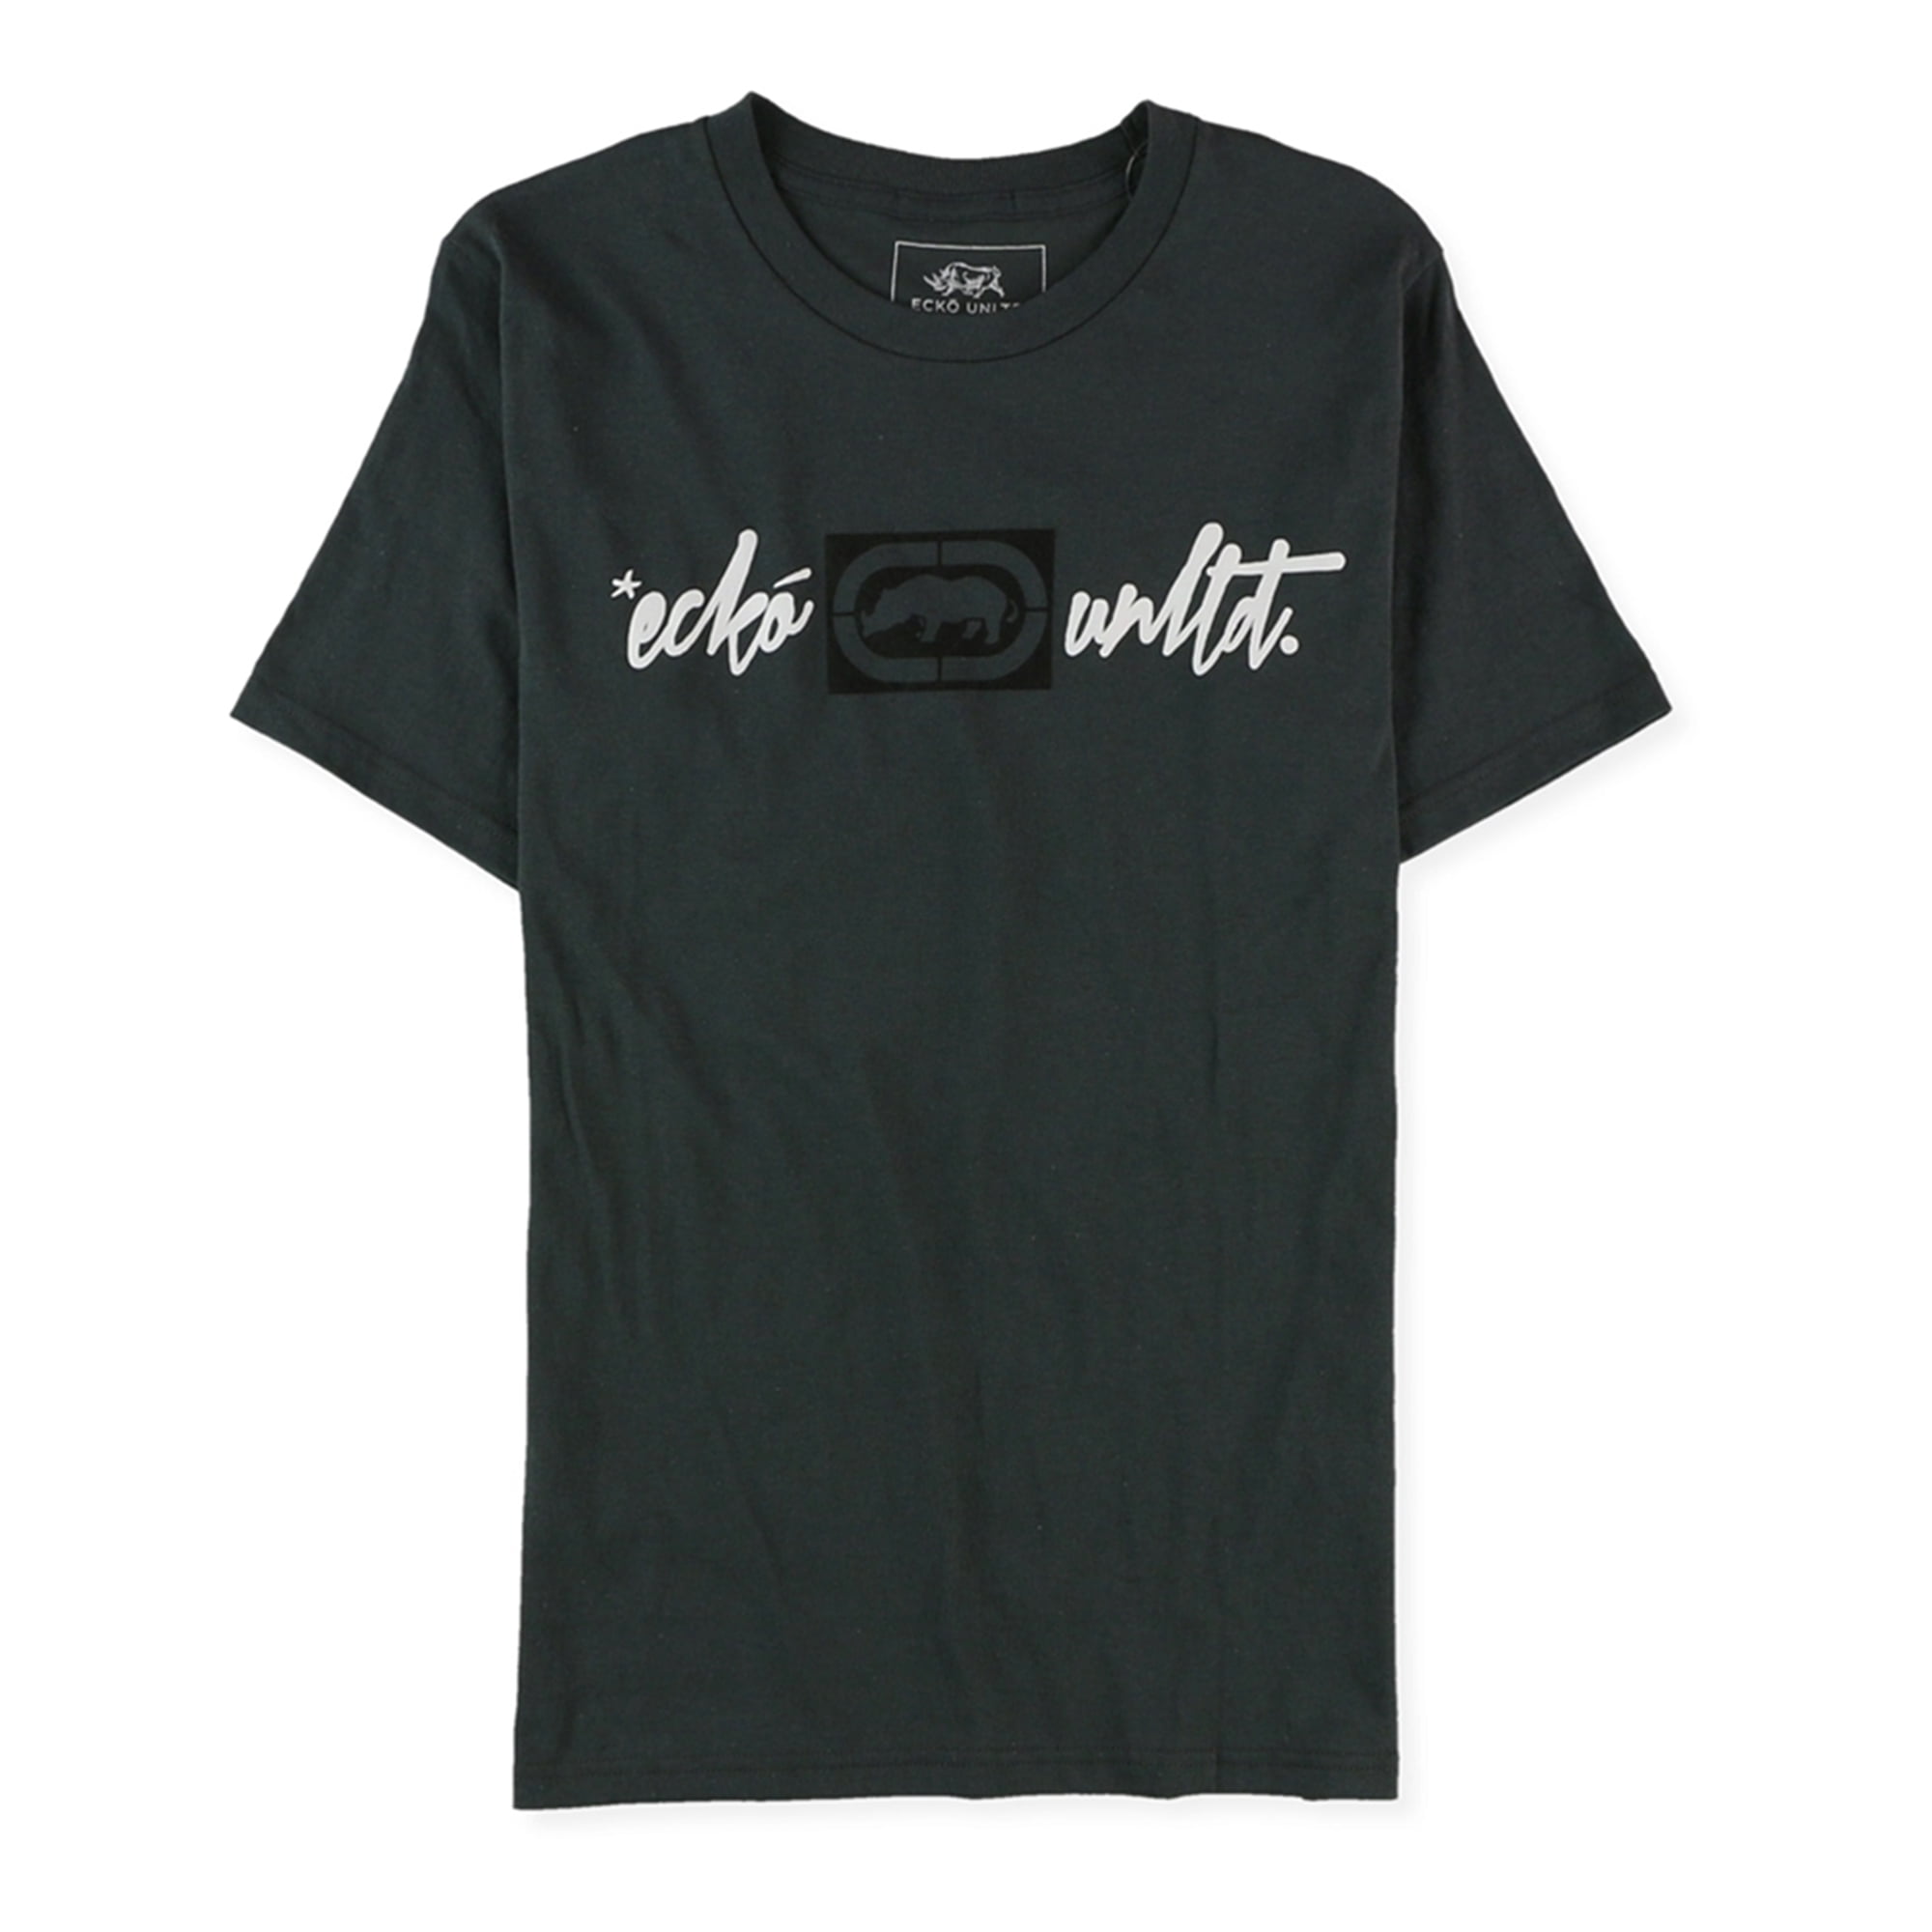 Ecko Unltd. Mens Slim Fit Script Graphic T-Shirt, Black, Small